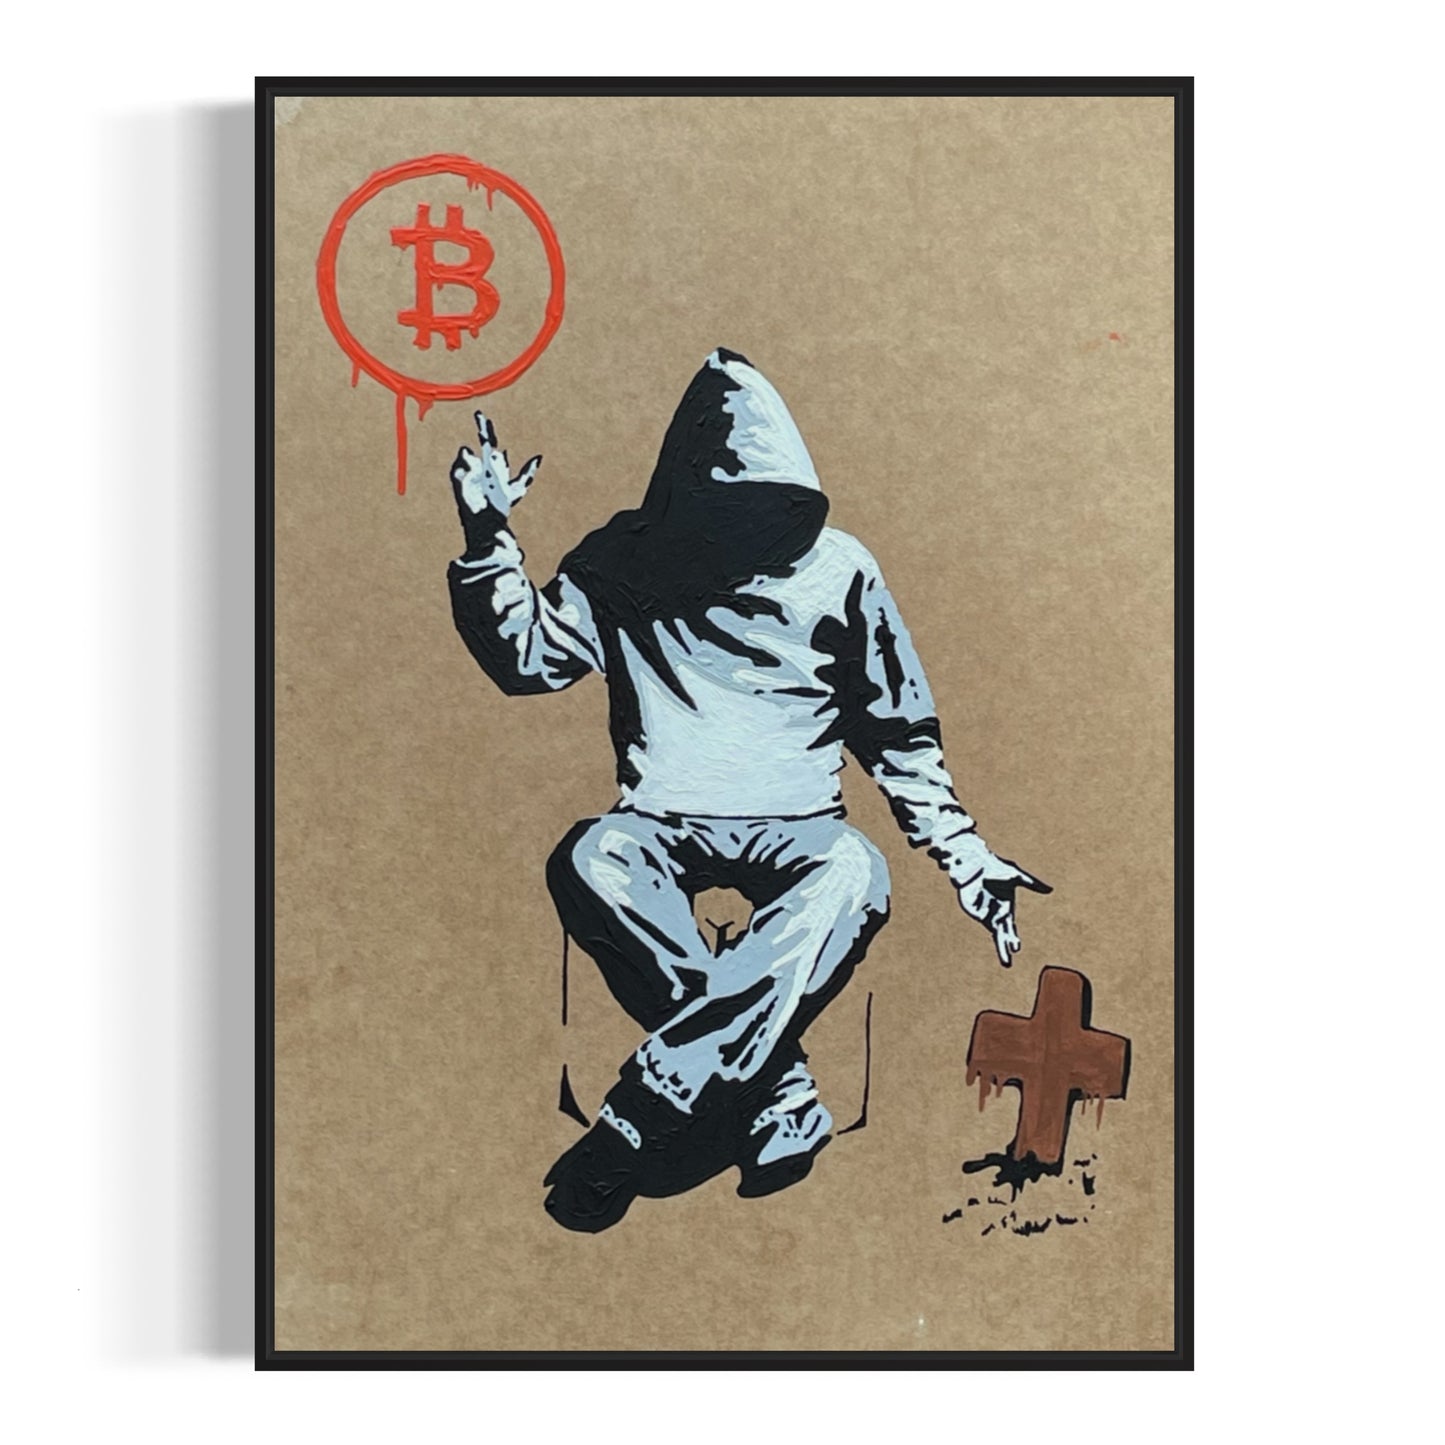 Cardboard Acrylic Paint A4 "Bitcoin or Die"